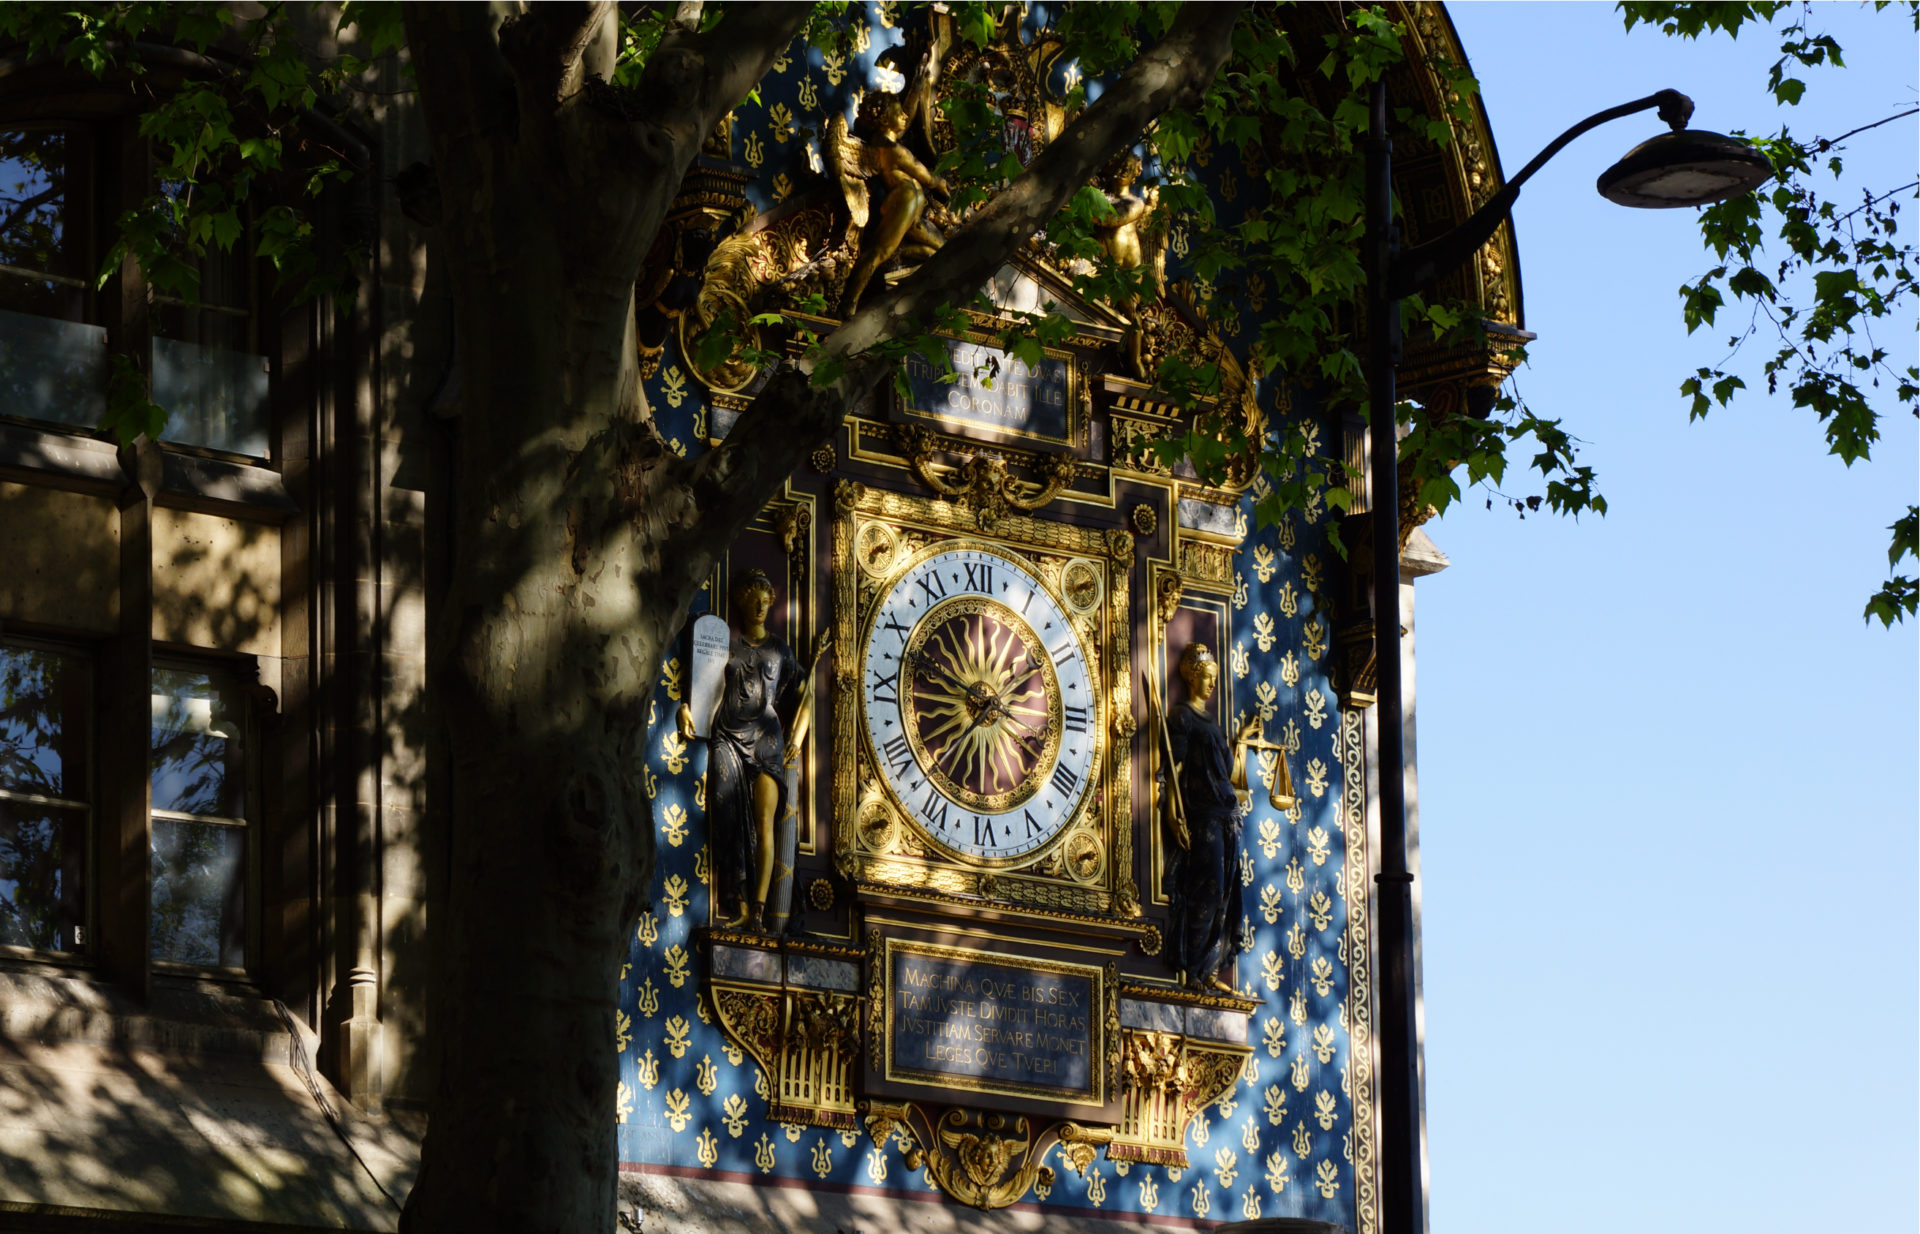 Visit heart of Paris - clock Delphine